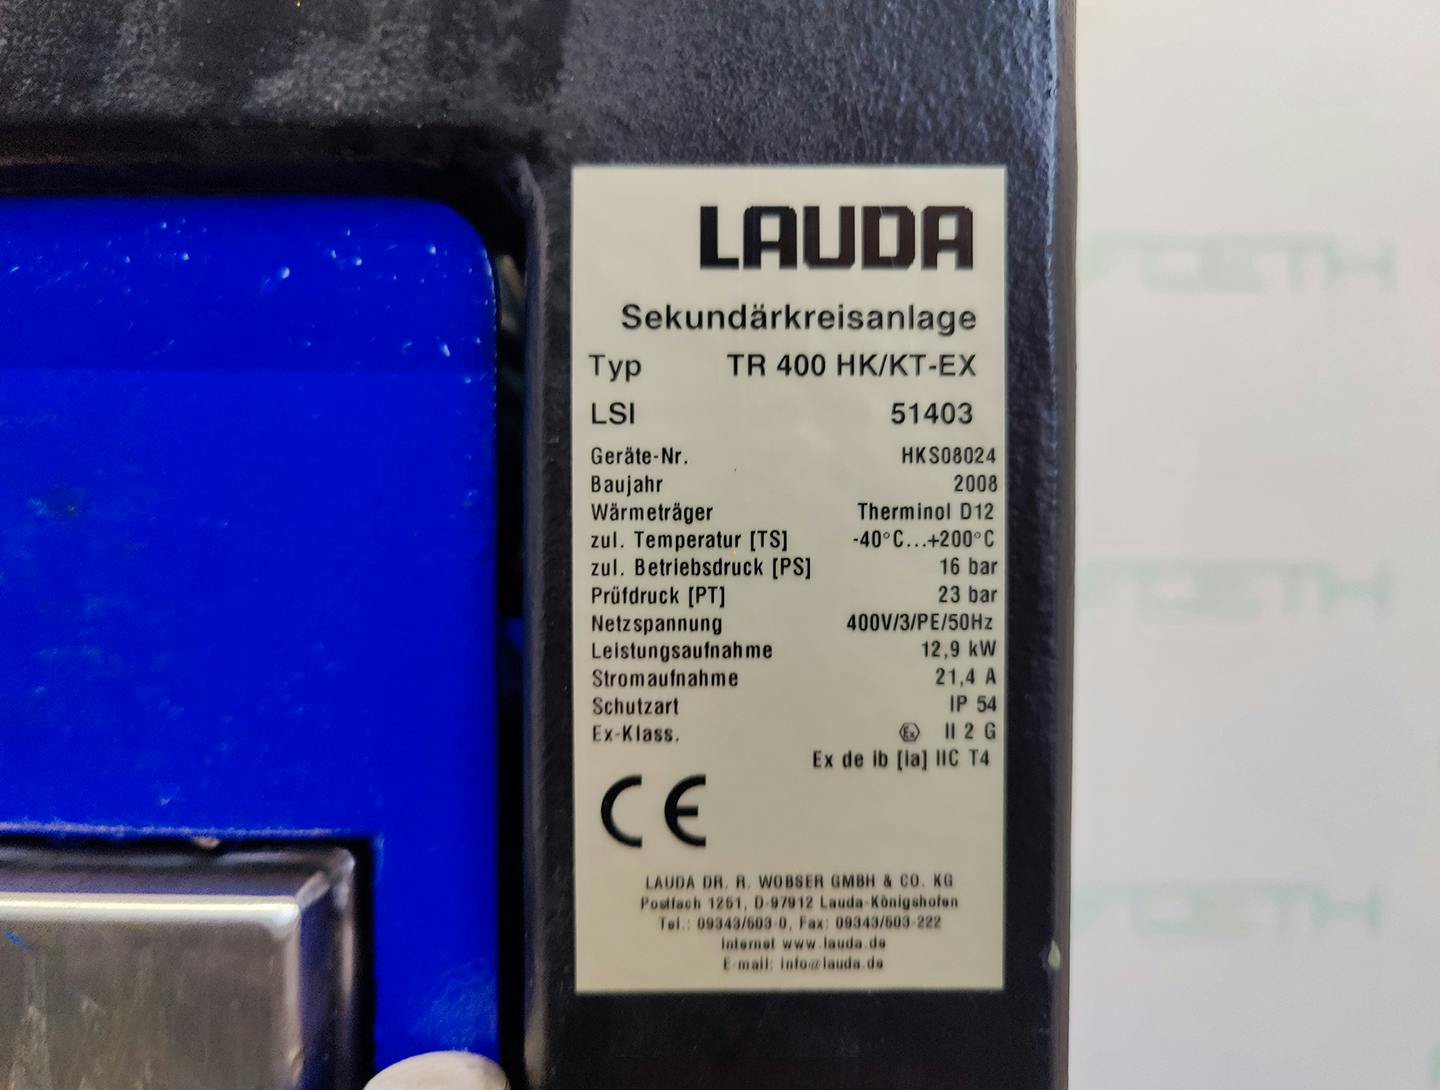 Lauda TR400 HK/KT-EX "secondary circuit system" - Unidade de fluido térmico - image 5